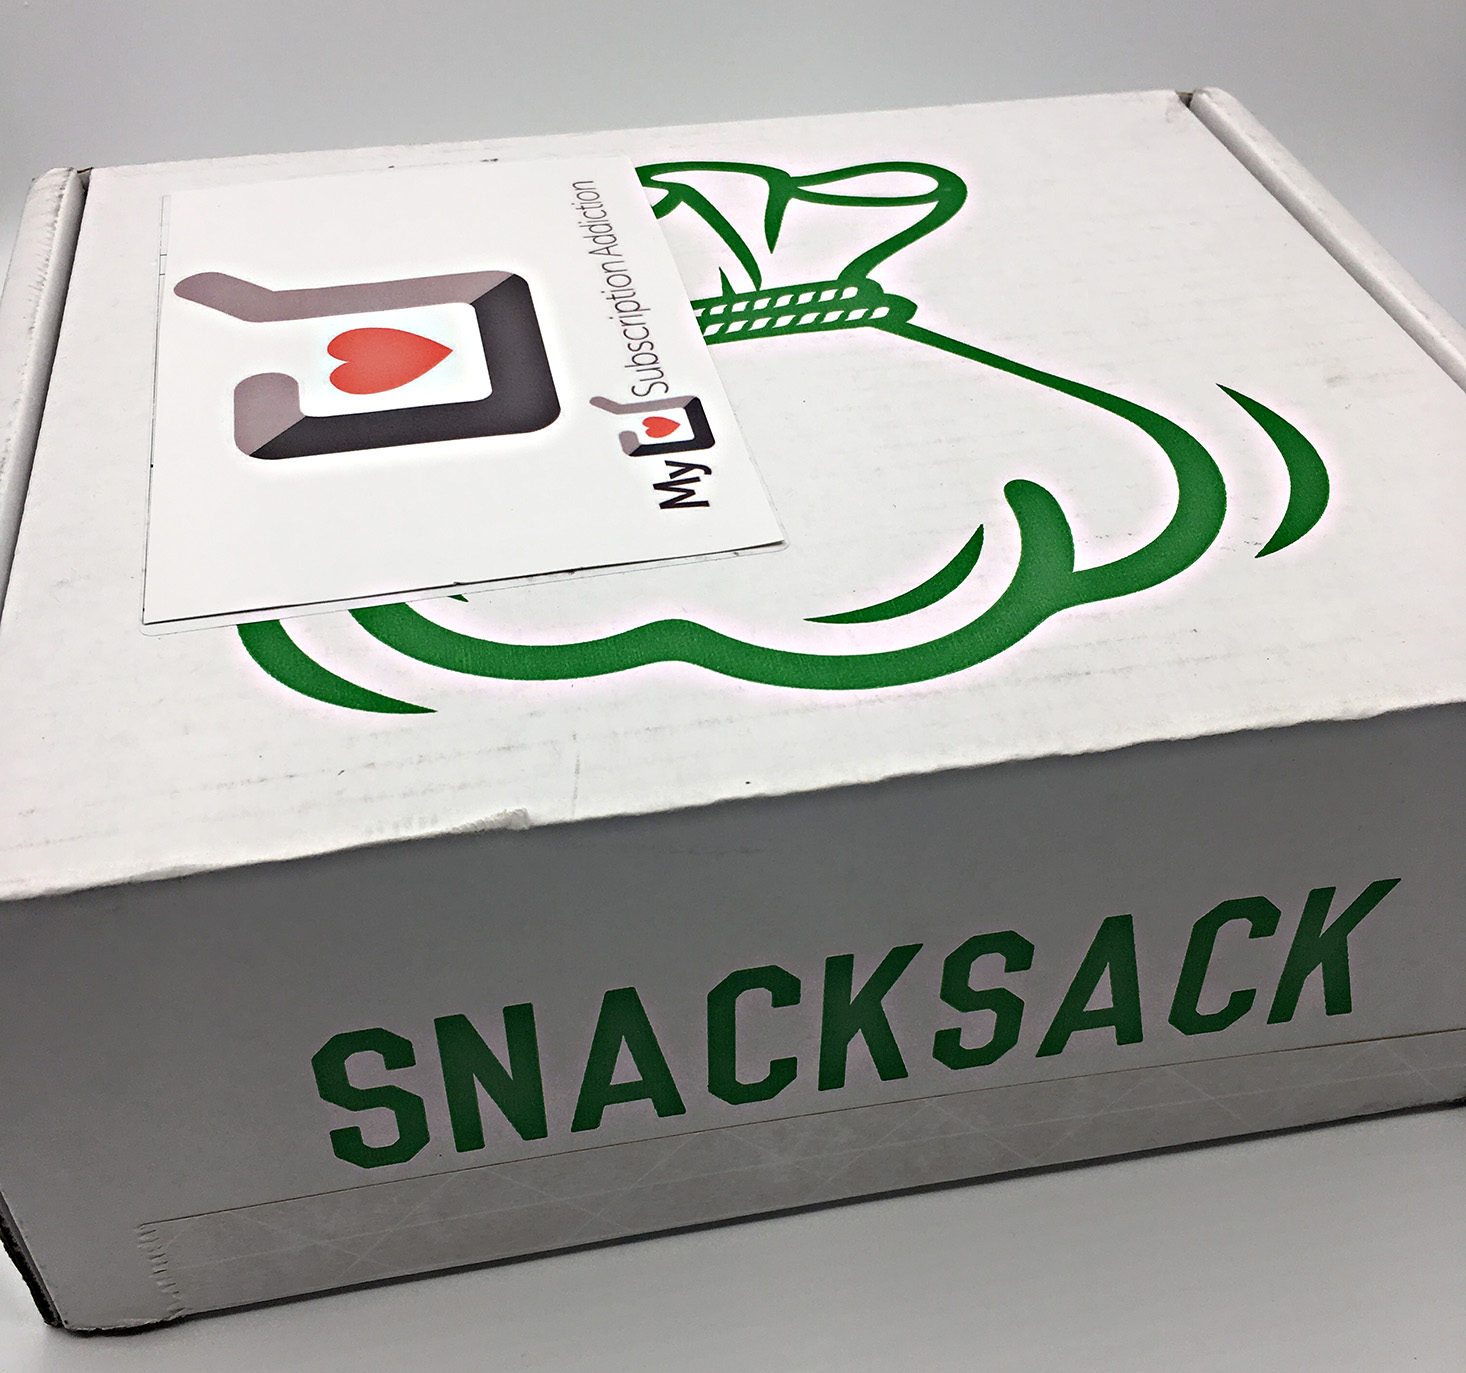 snack-sack-october-2016-box